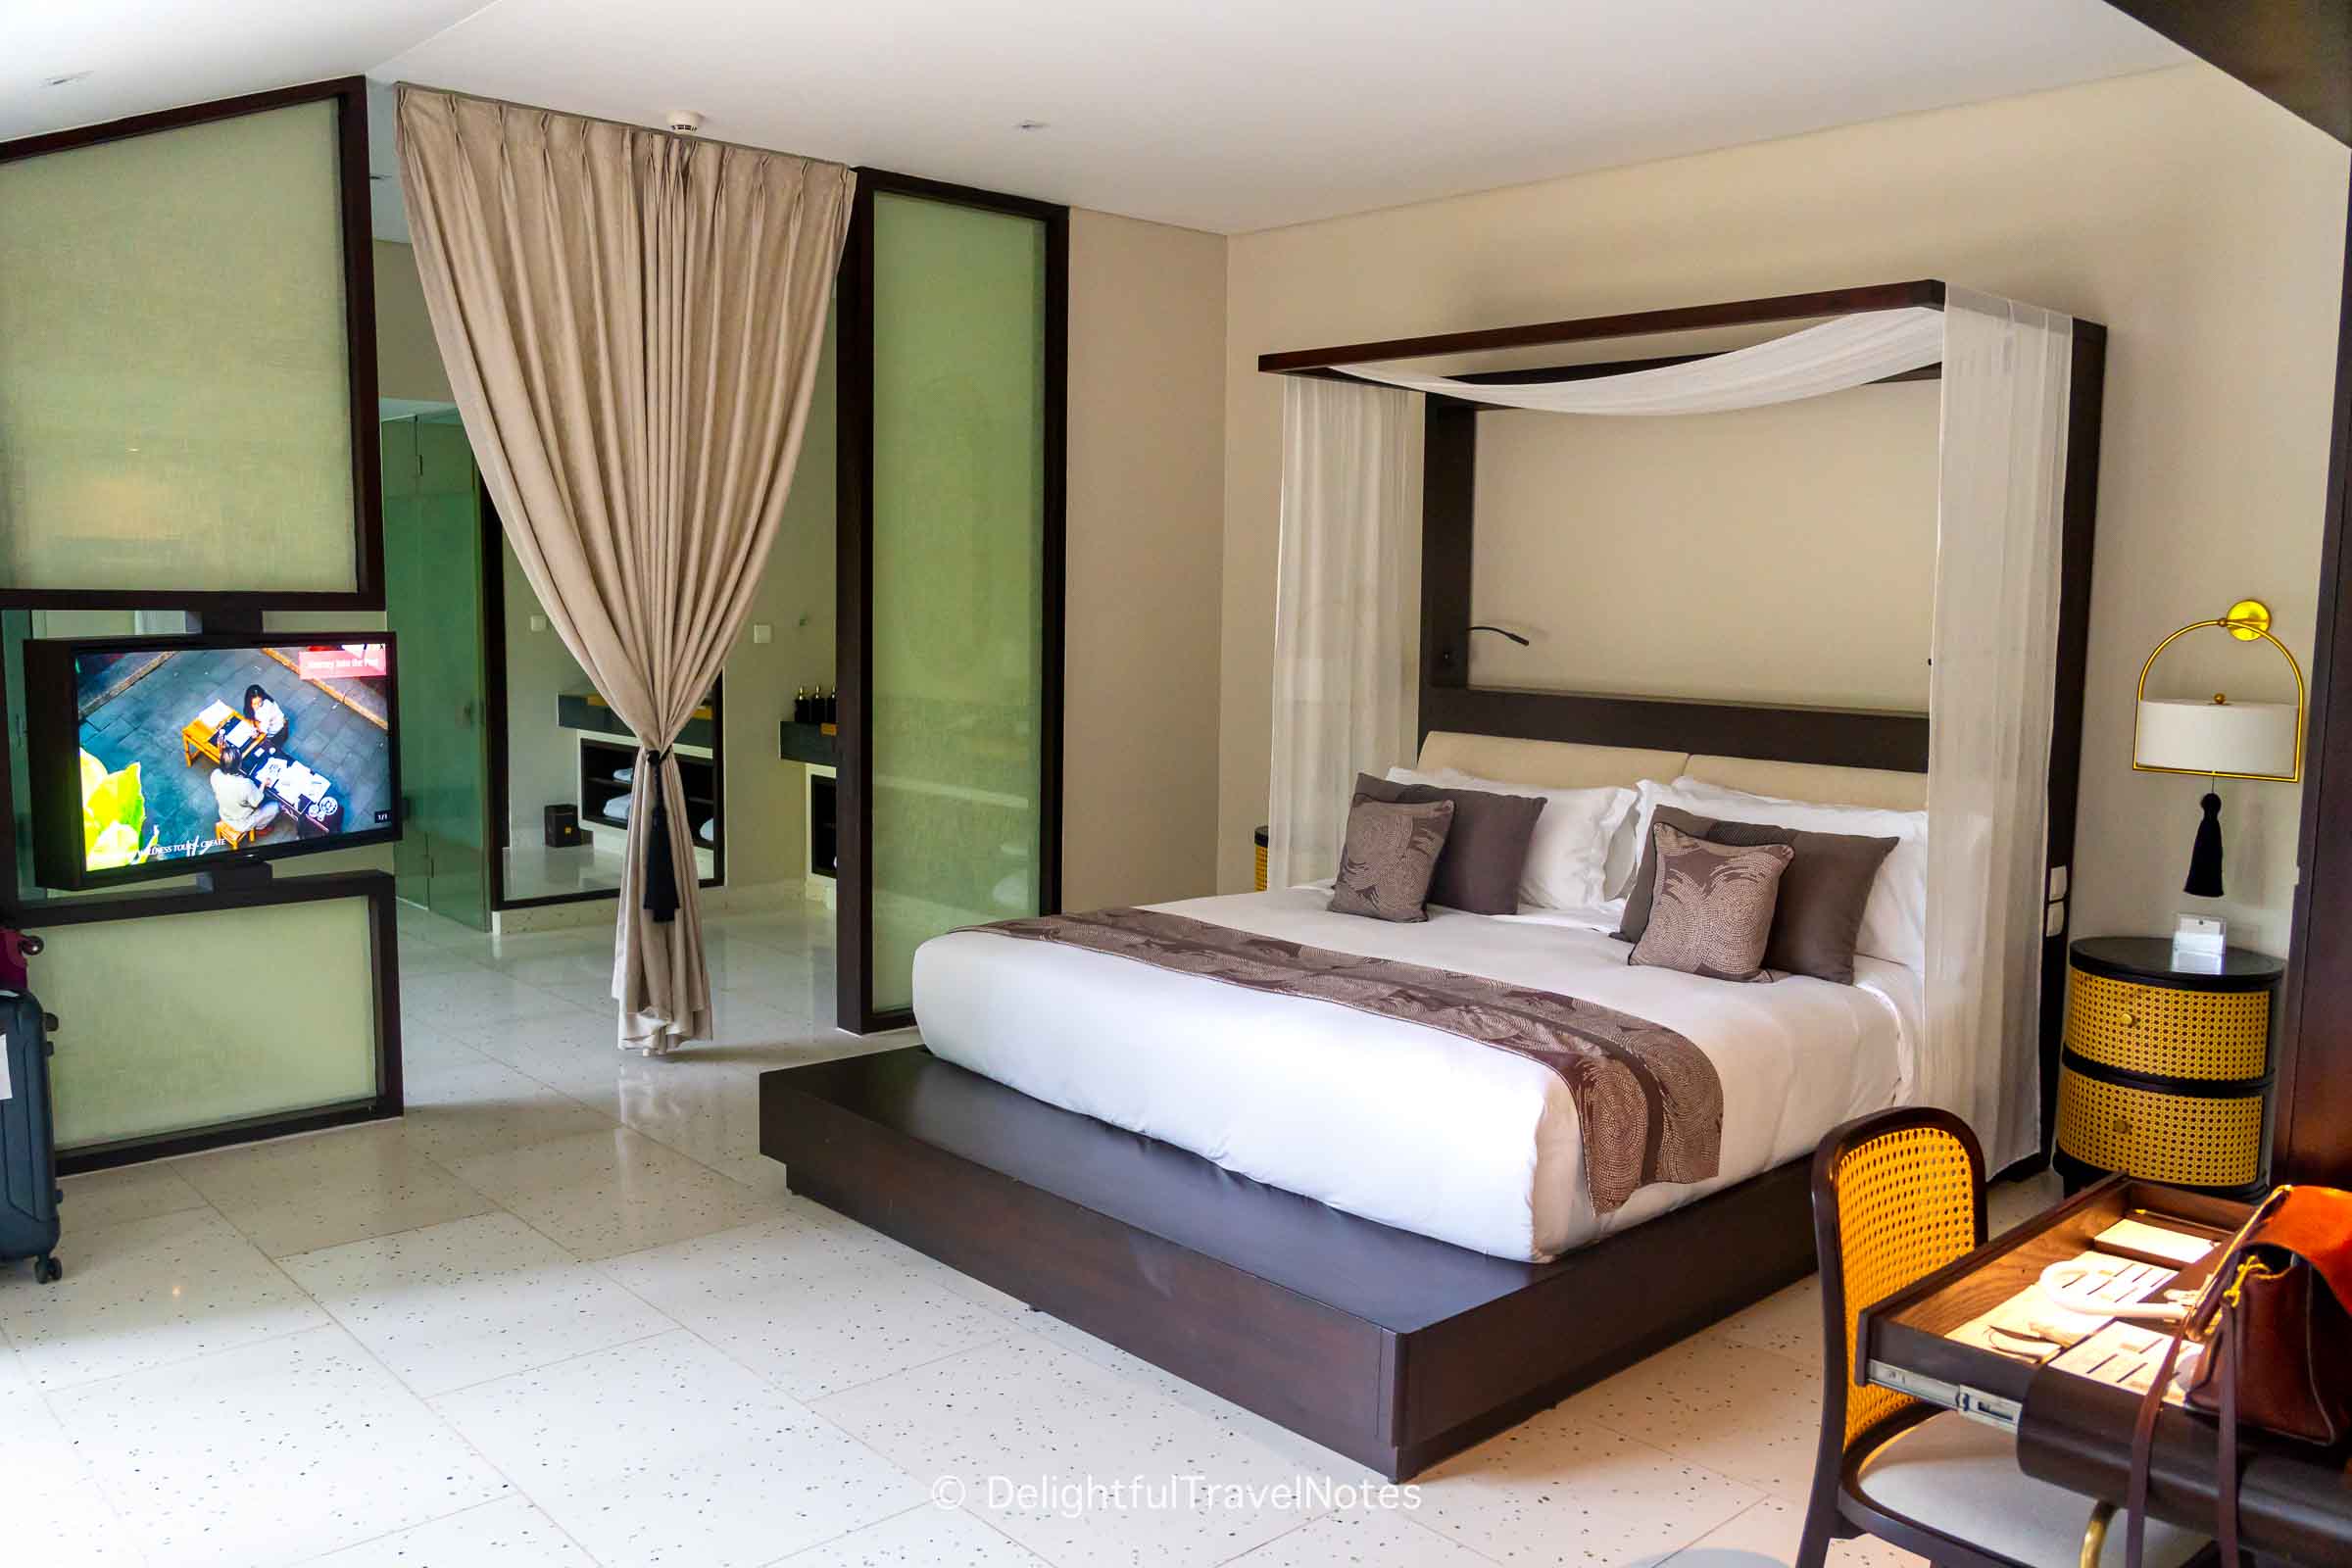 the bedroom at Tia Wellness Resort villa.